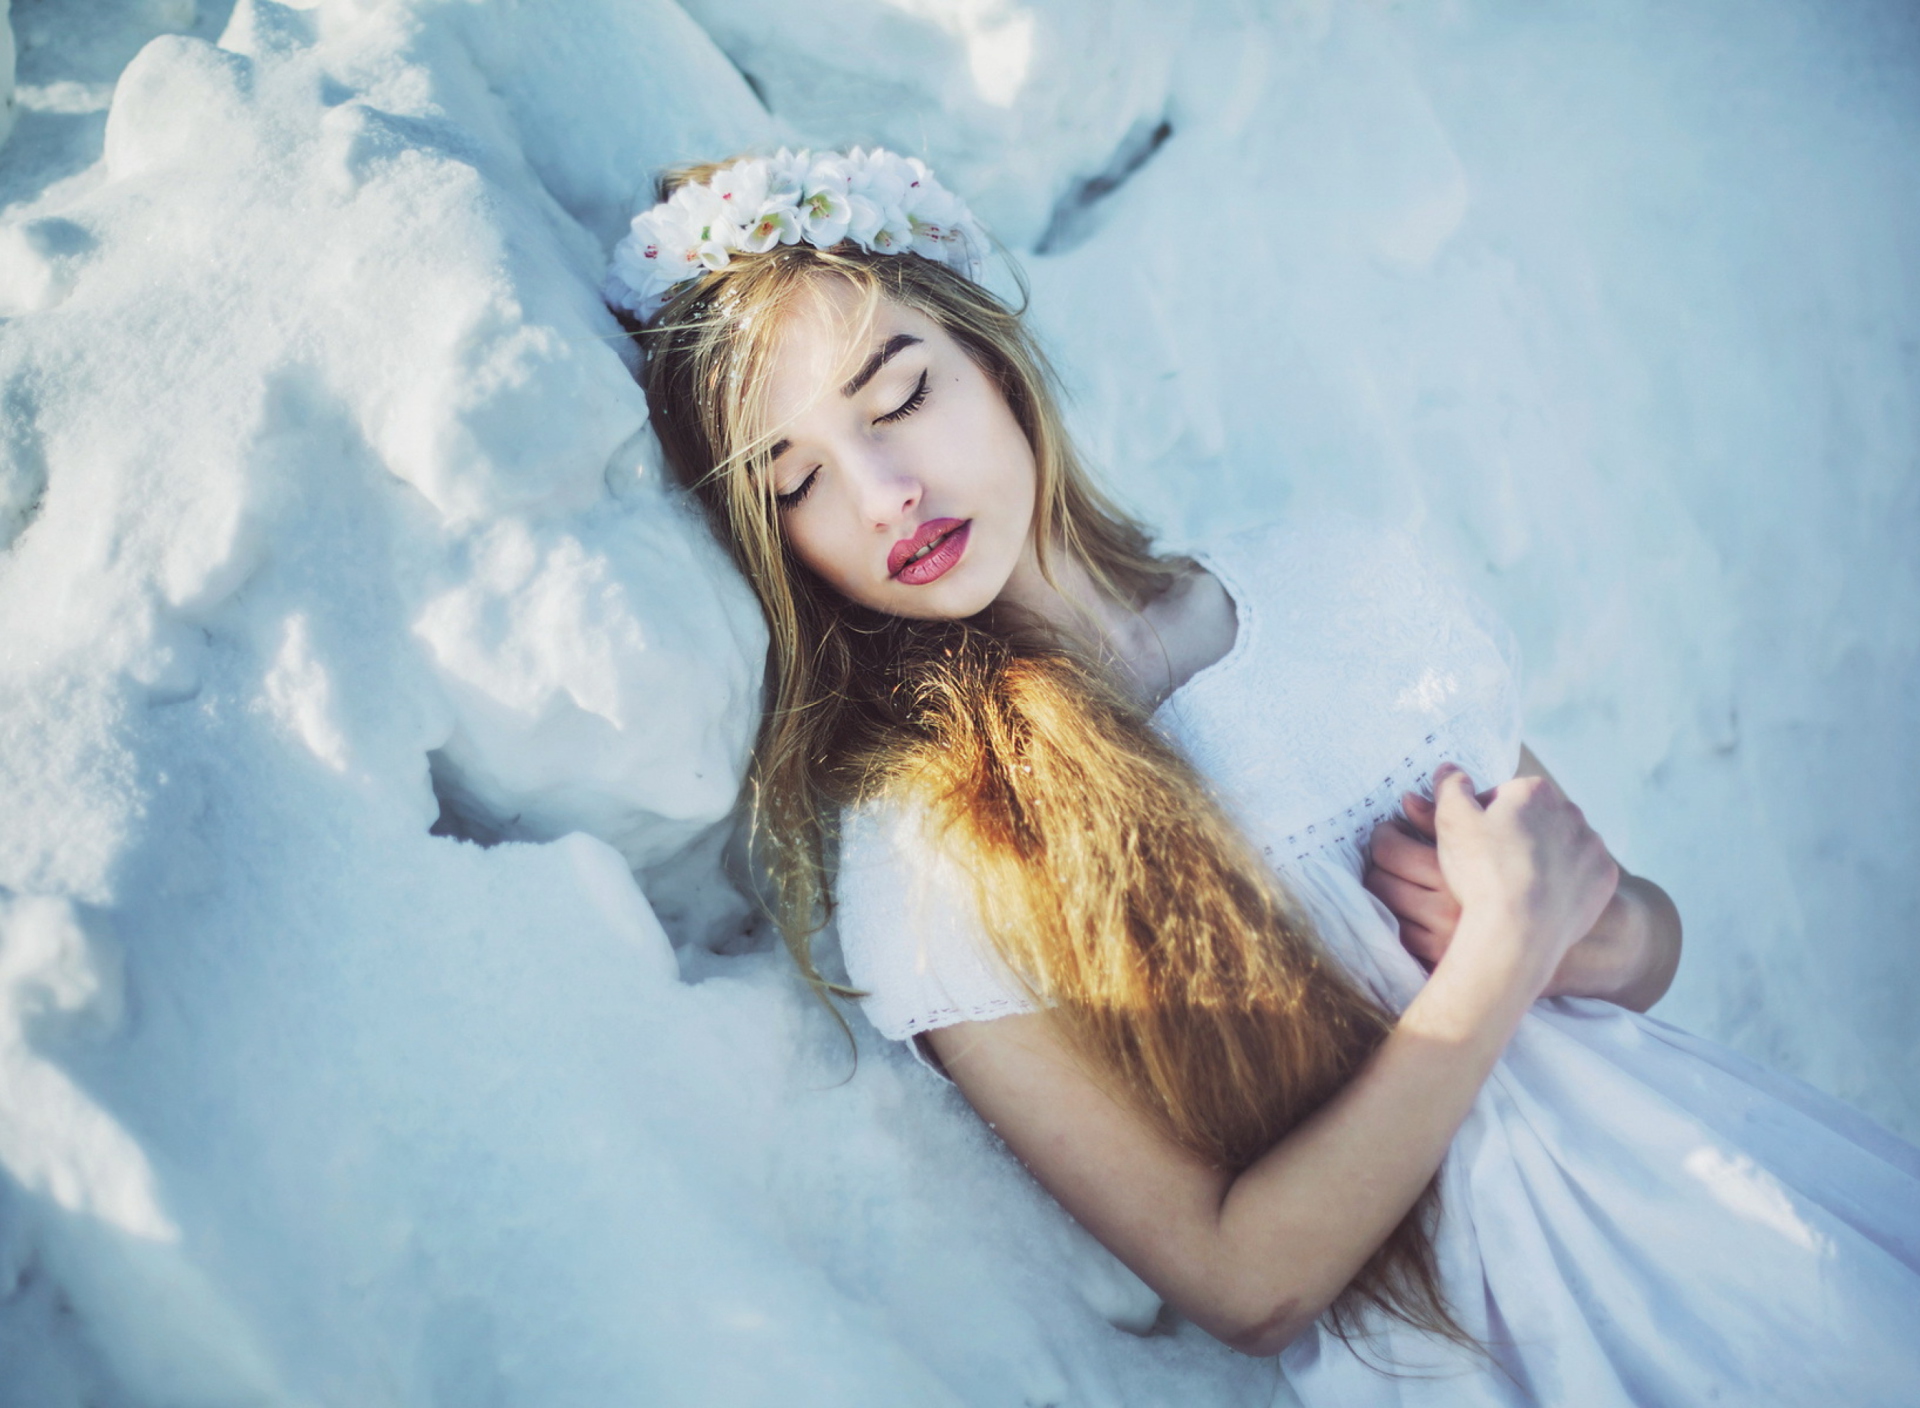 Обои Sleeping Snow Beauty 1920x1408